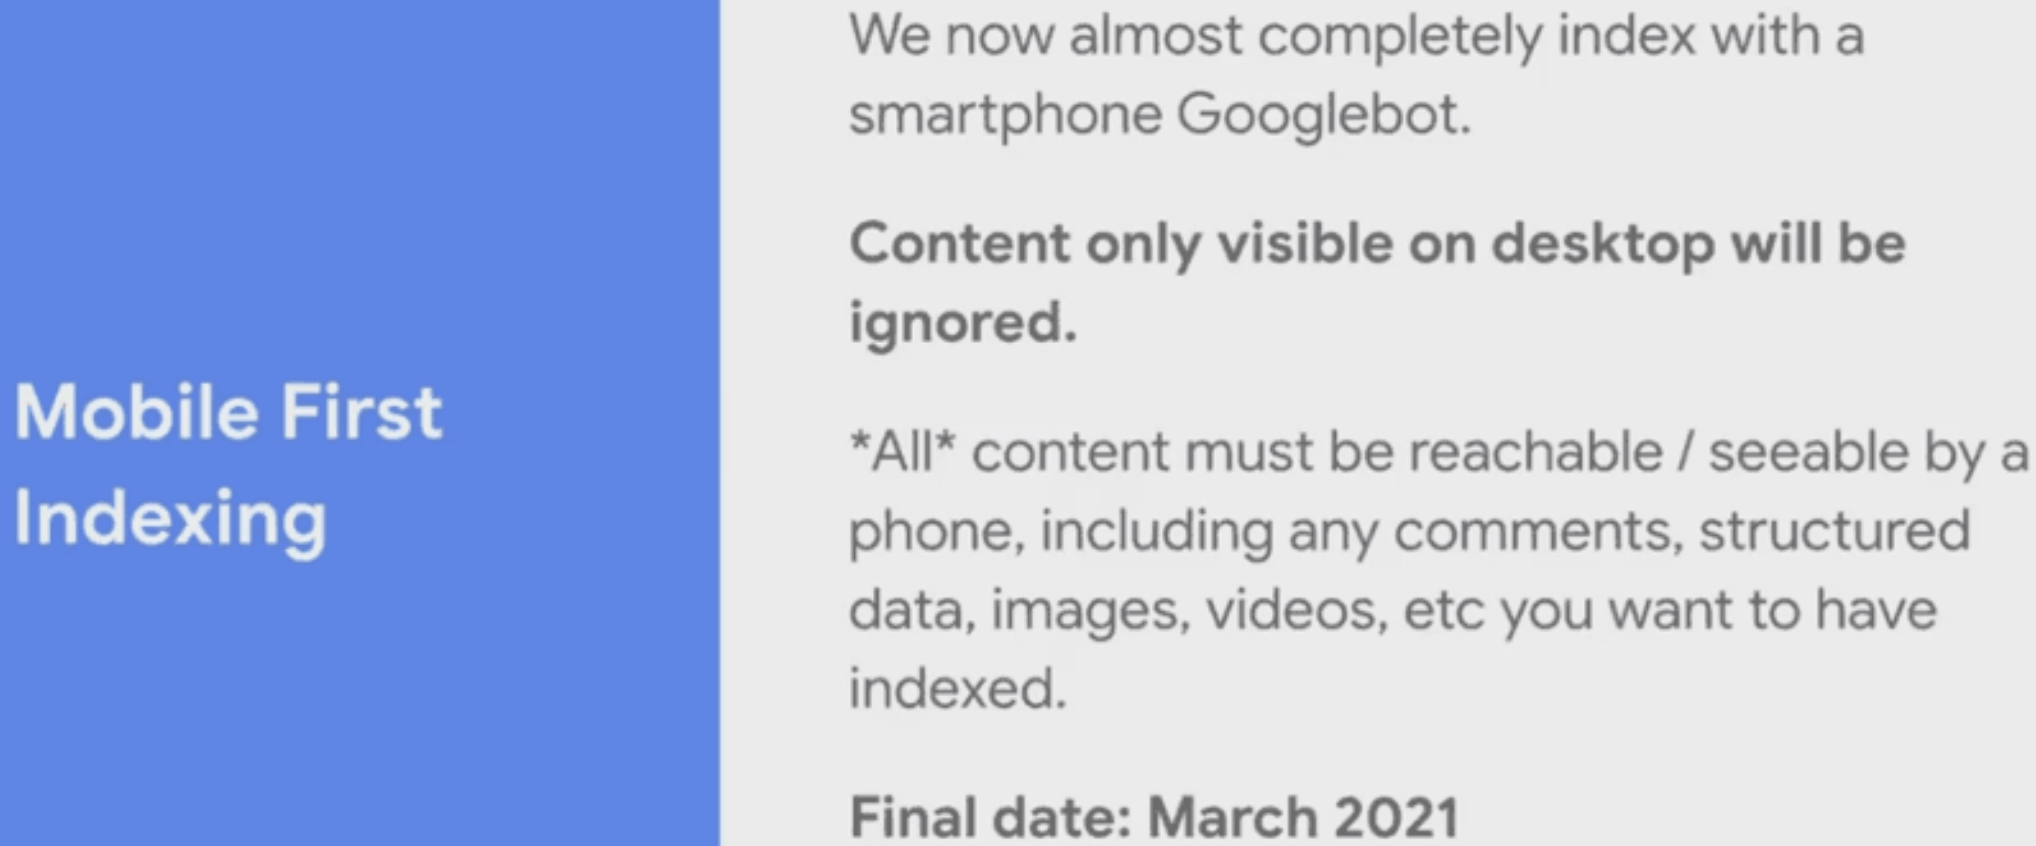 Google: Content, der nur auf dem Desktop sichtbar ist, wird ab März 2021 ignoriert